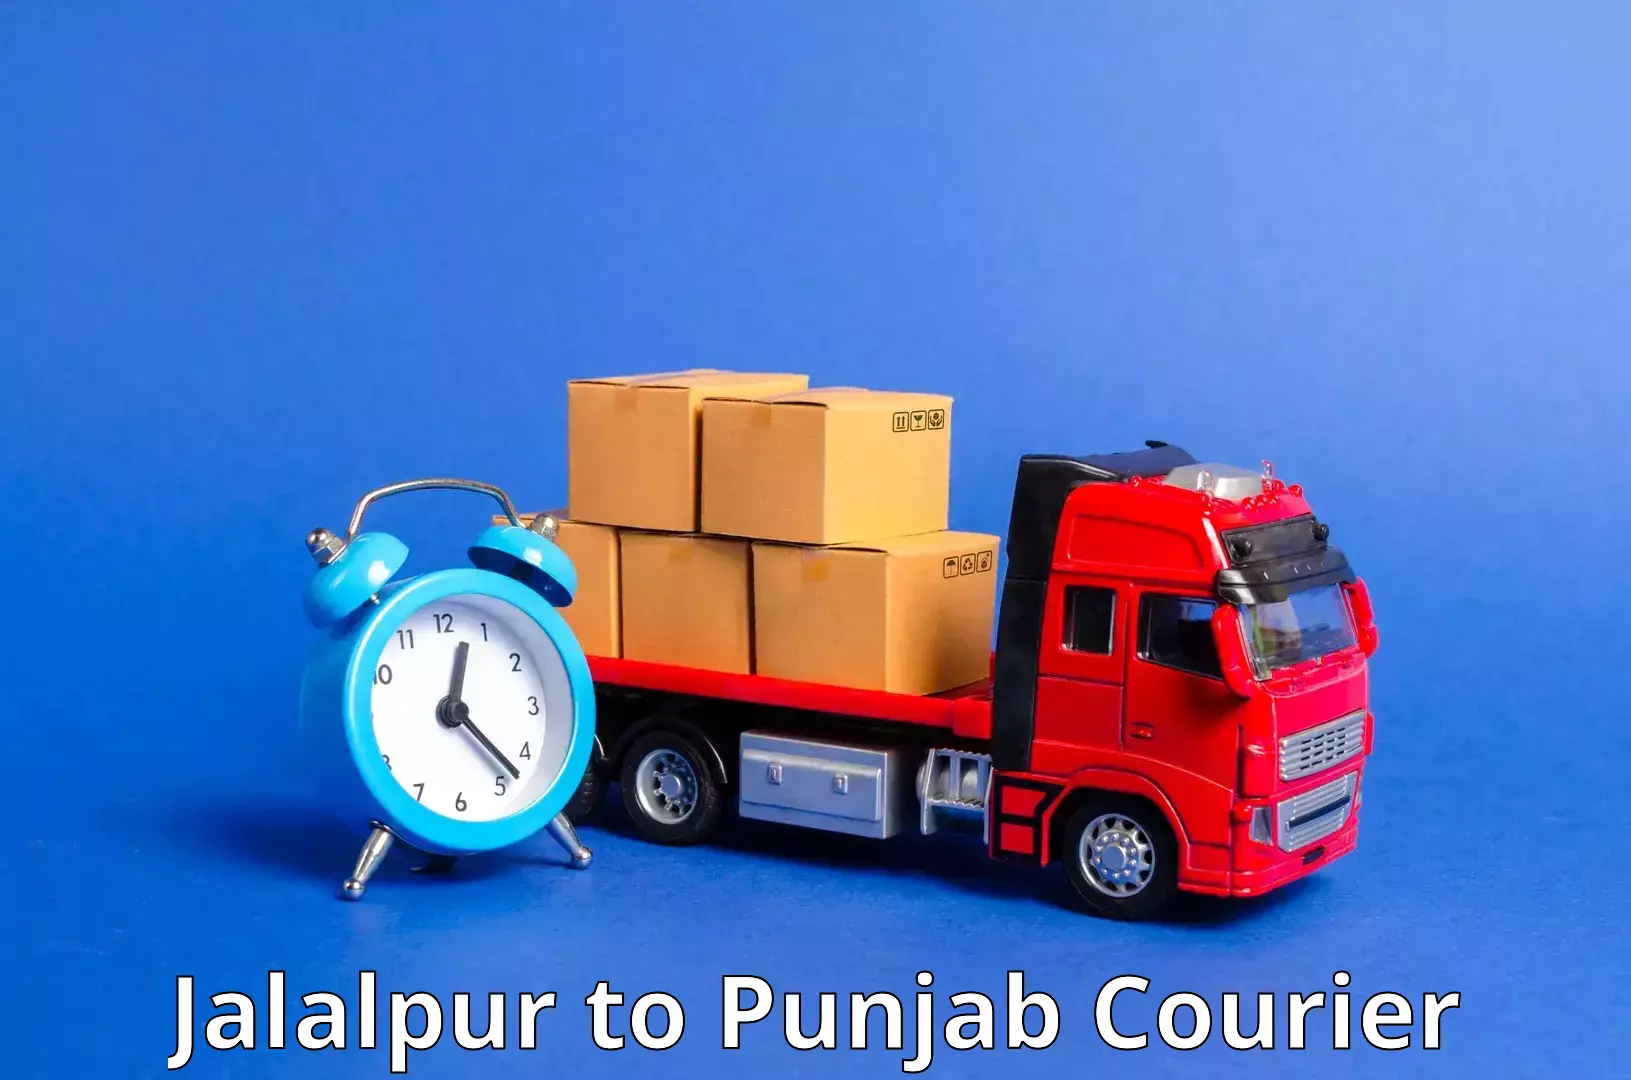 Reliable parcel services Jalalpur to Khanna